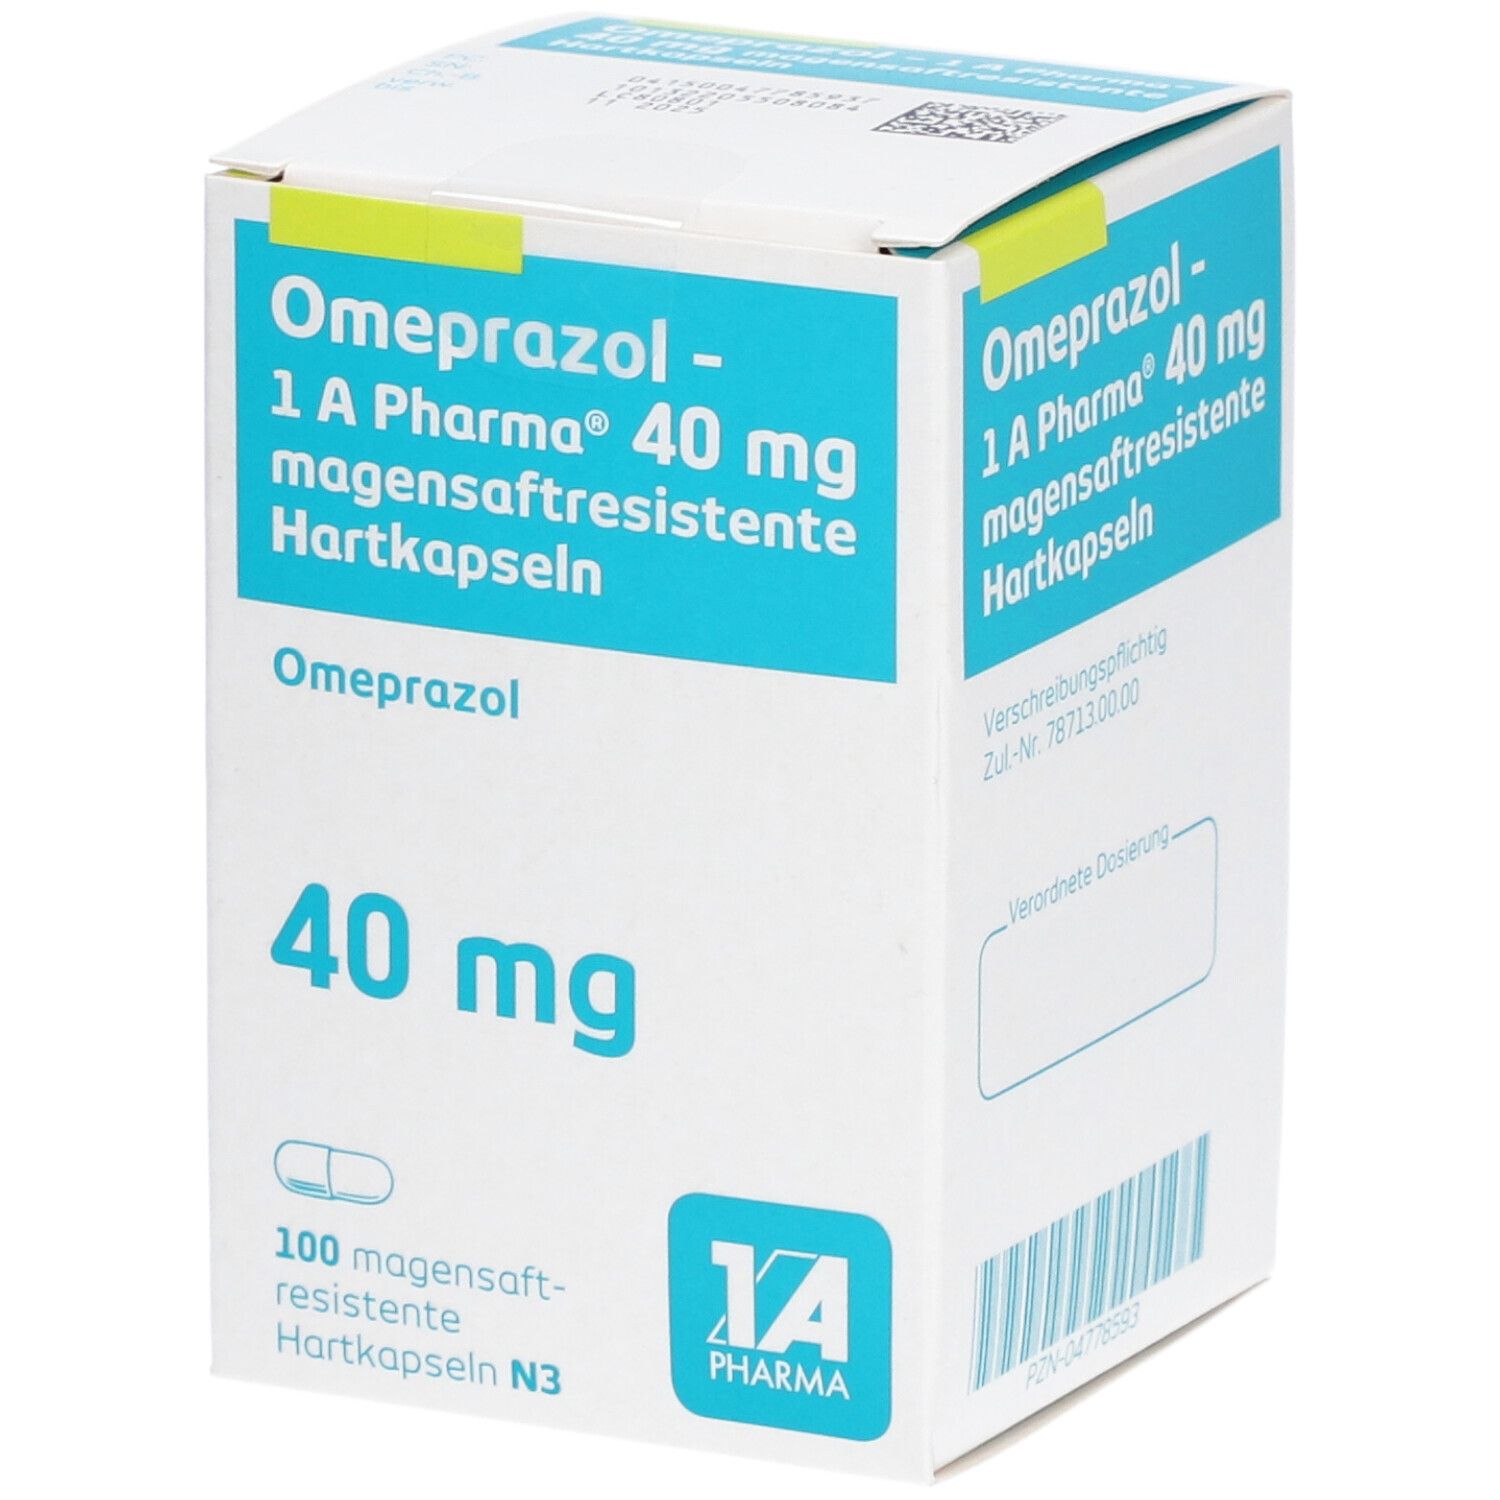 Omeprazol 40Mg 1A Pharma®